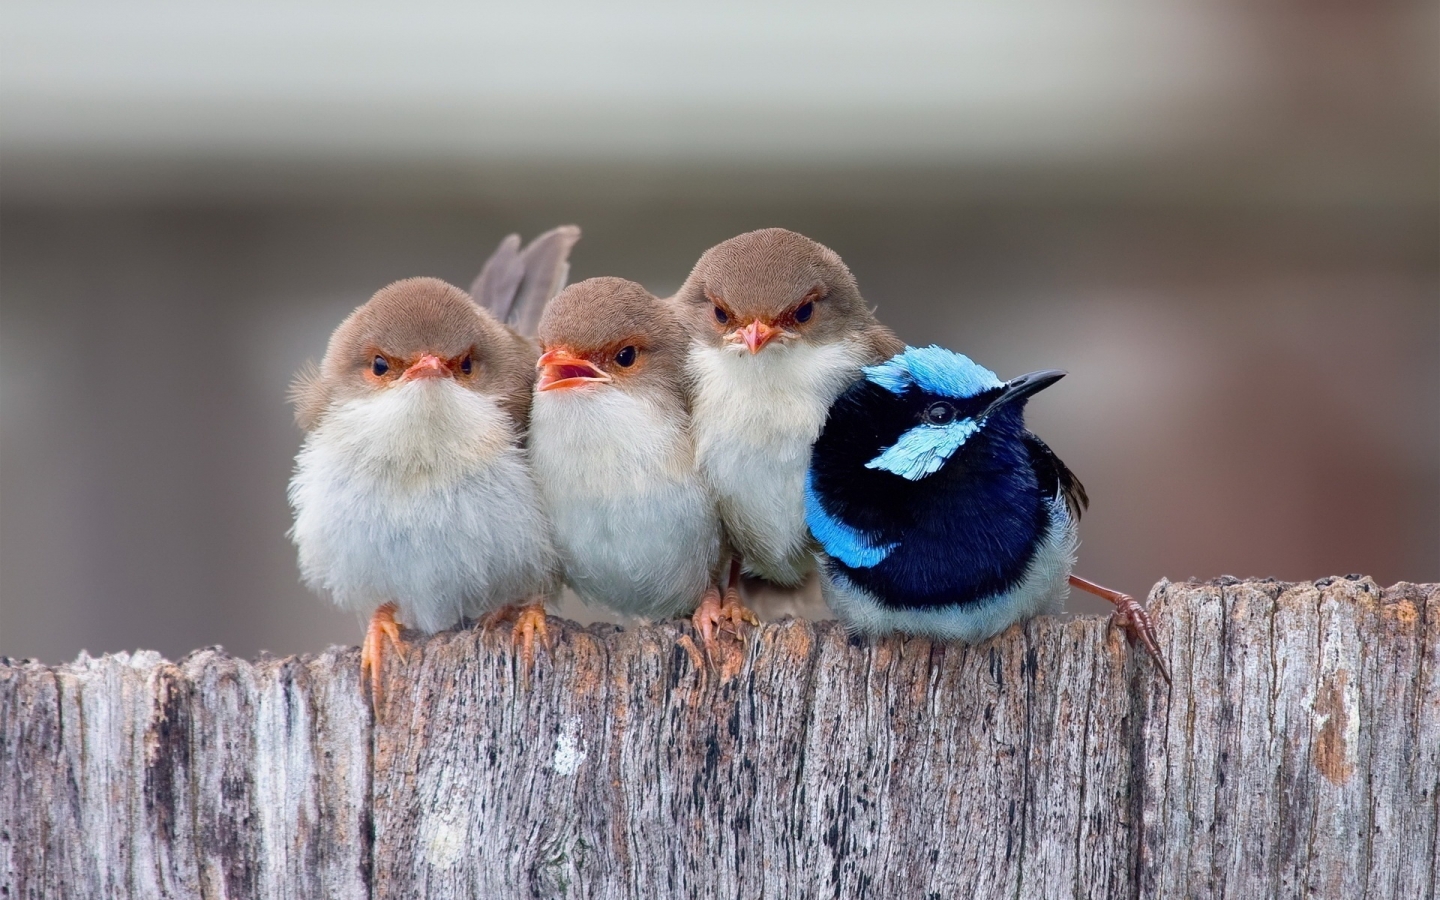 Cute Little Birds for 1440 x 900 widescreen resolution